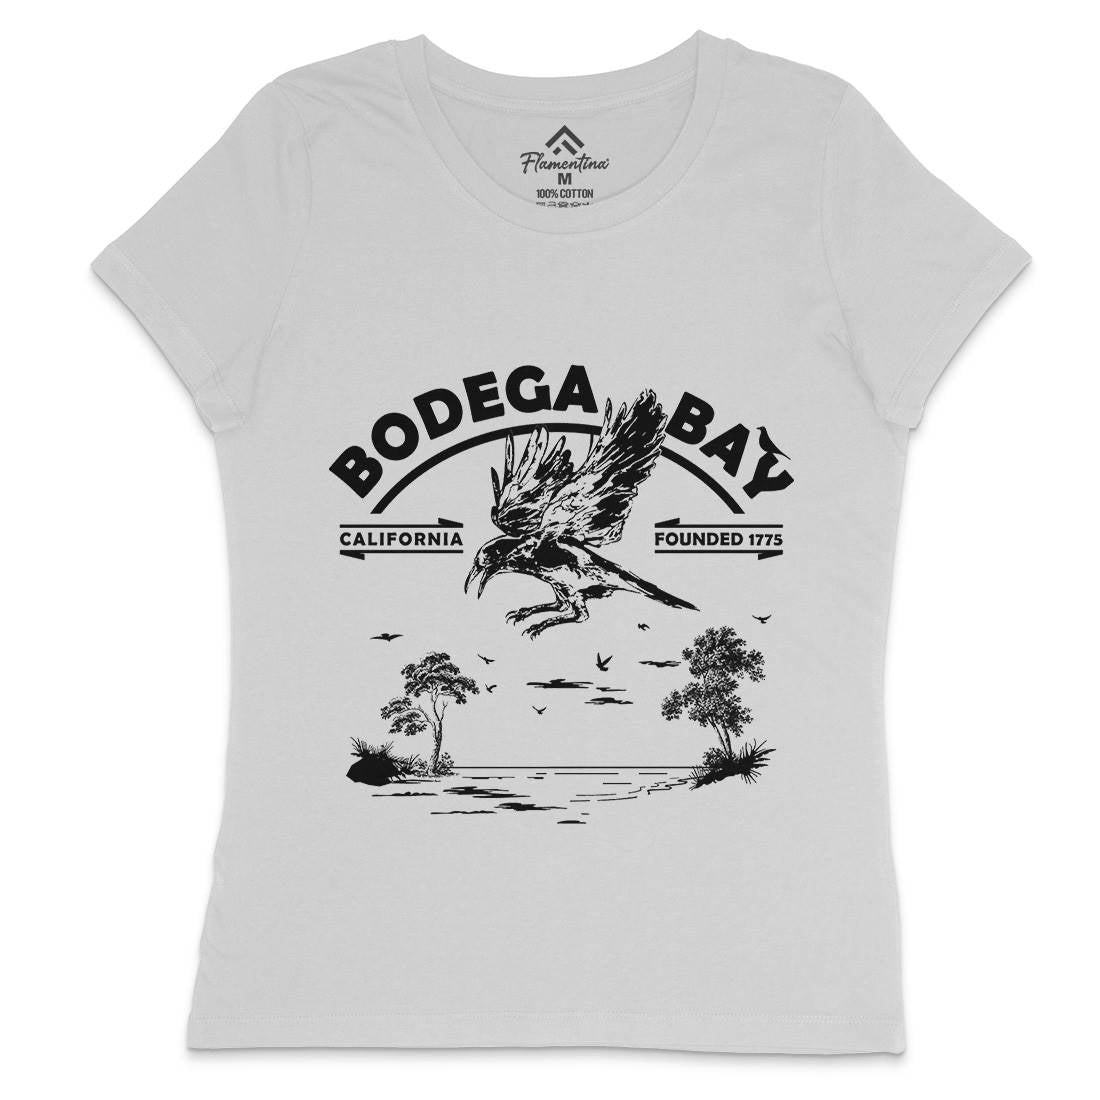 Bodega Bay Womens Crew Neck T-Shirt Horror D310